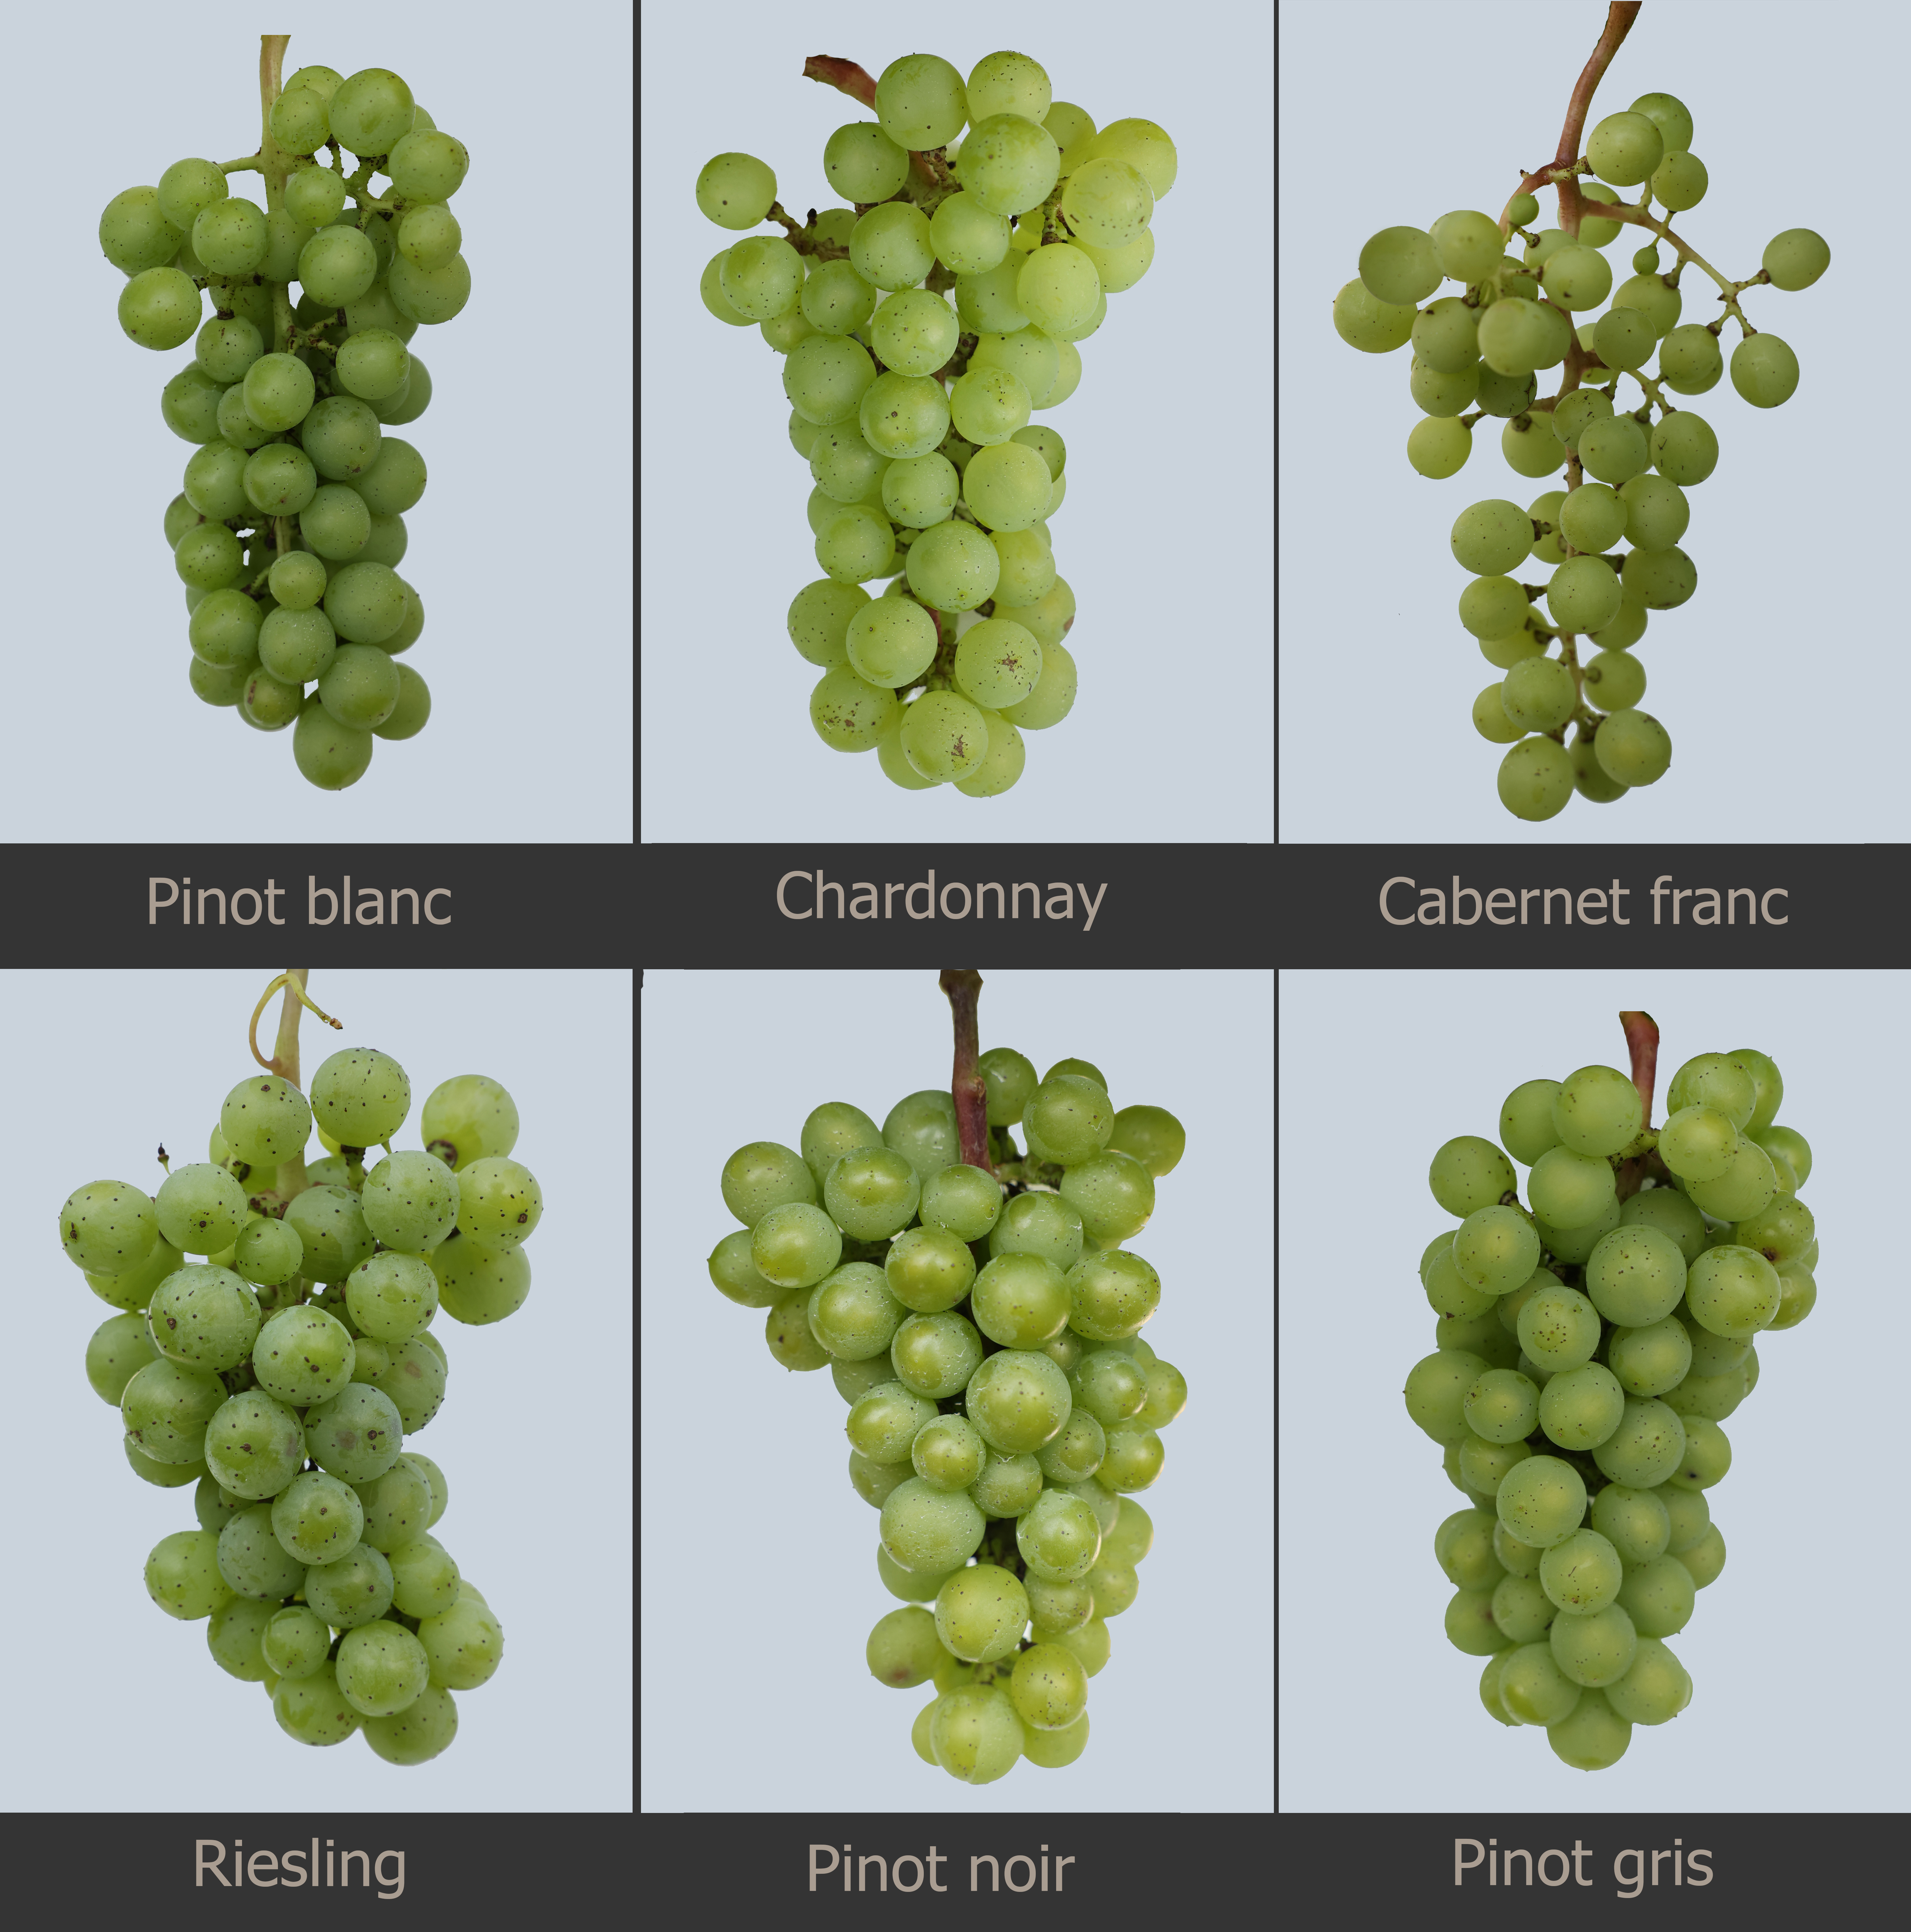 Varieties of grapes